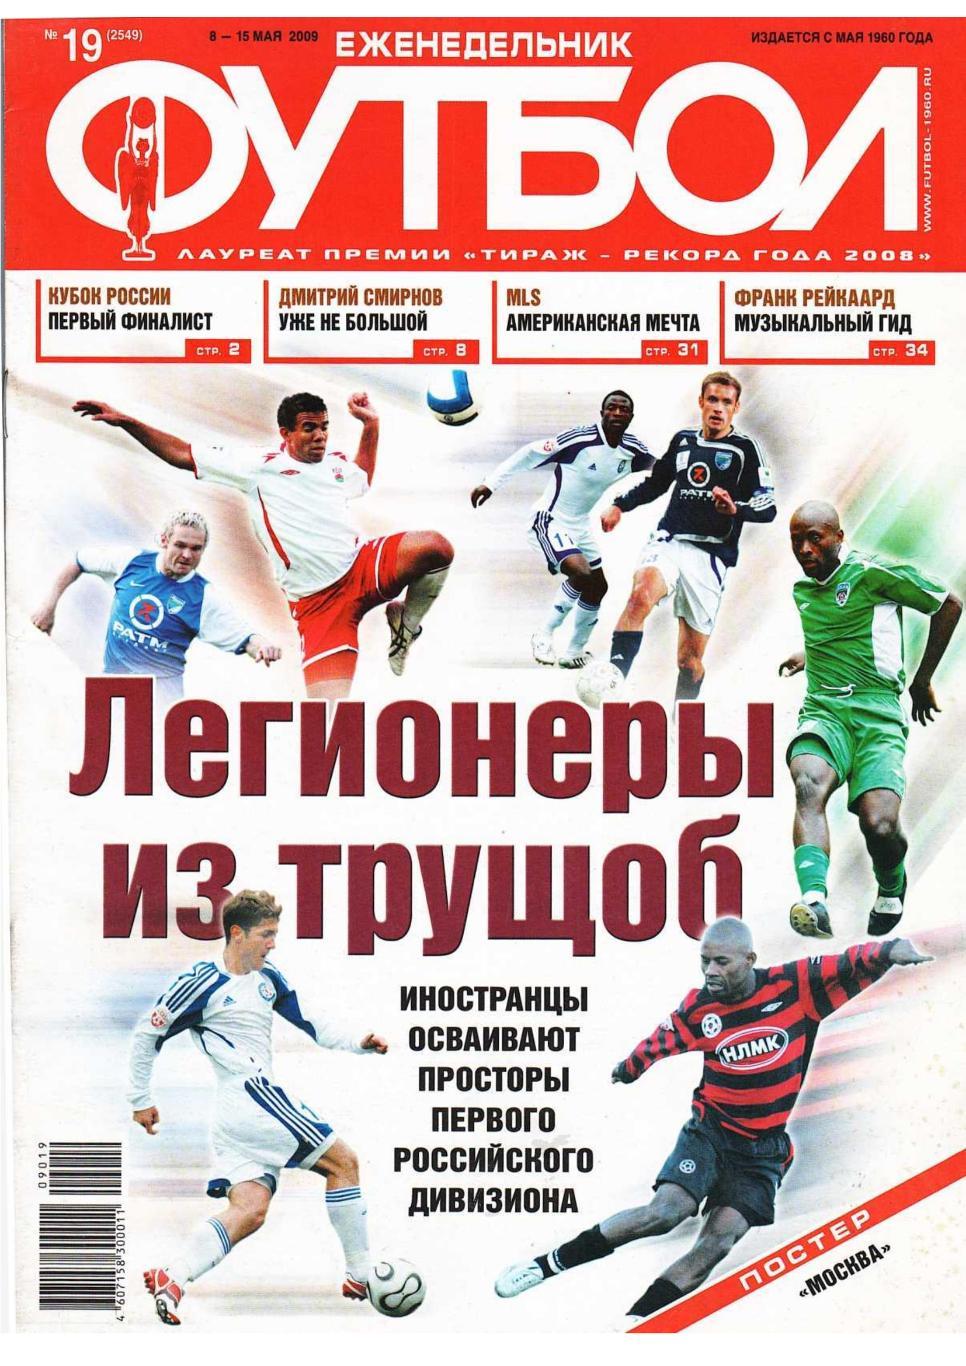 Еженедельник «Футбол». № 19. 8 – 15 мая 2009.